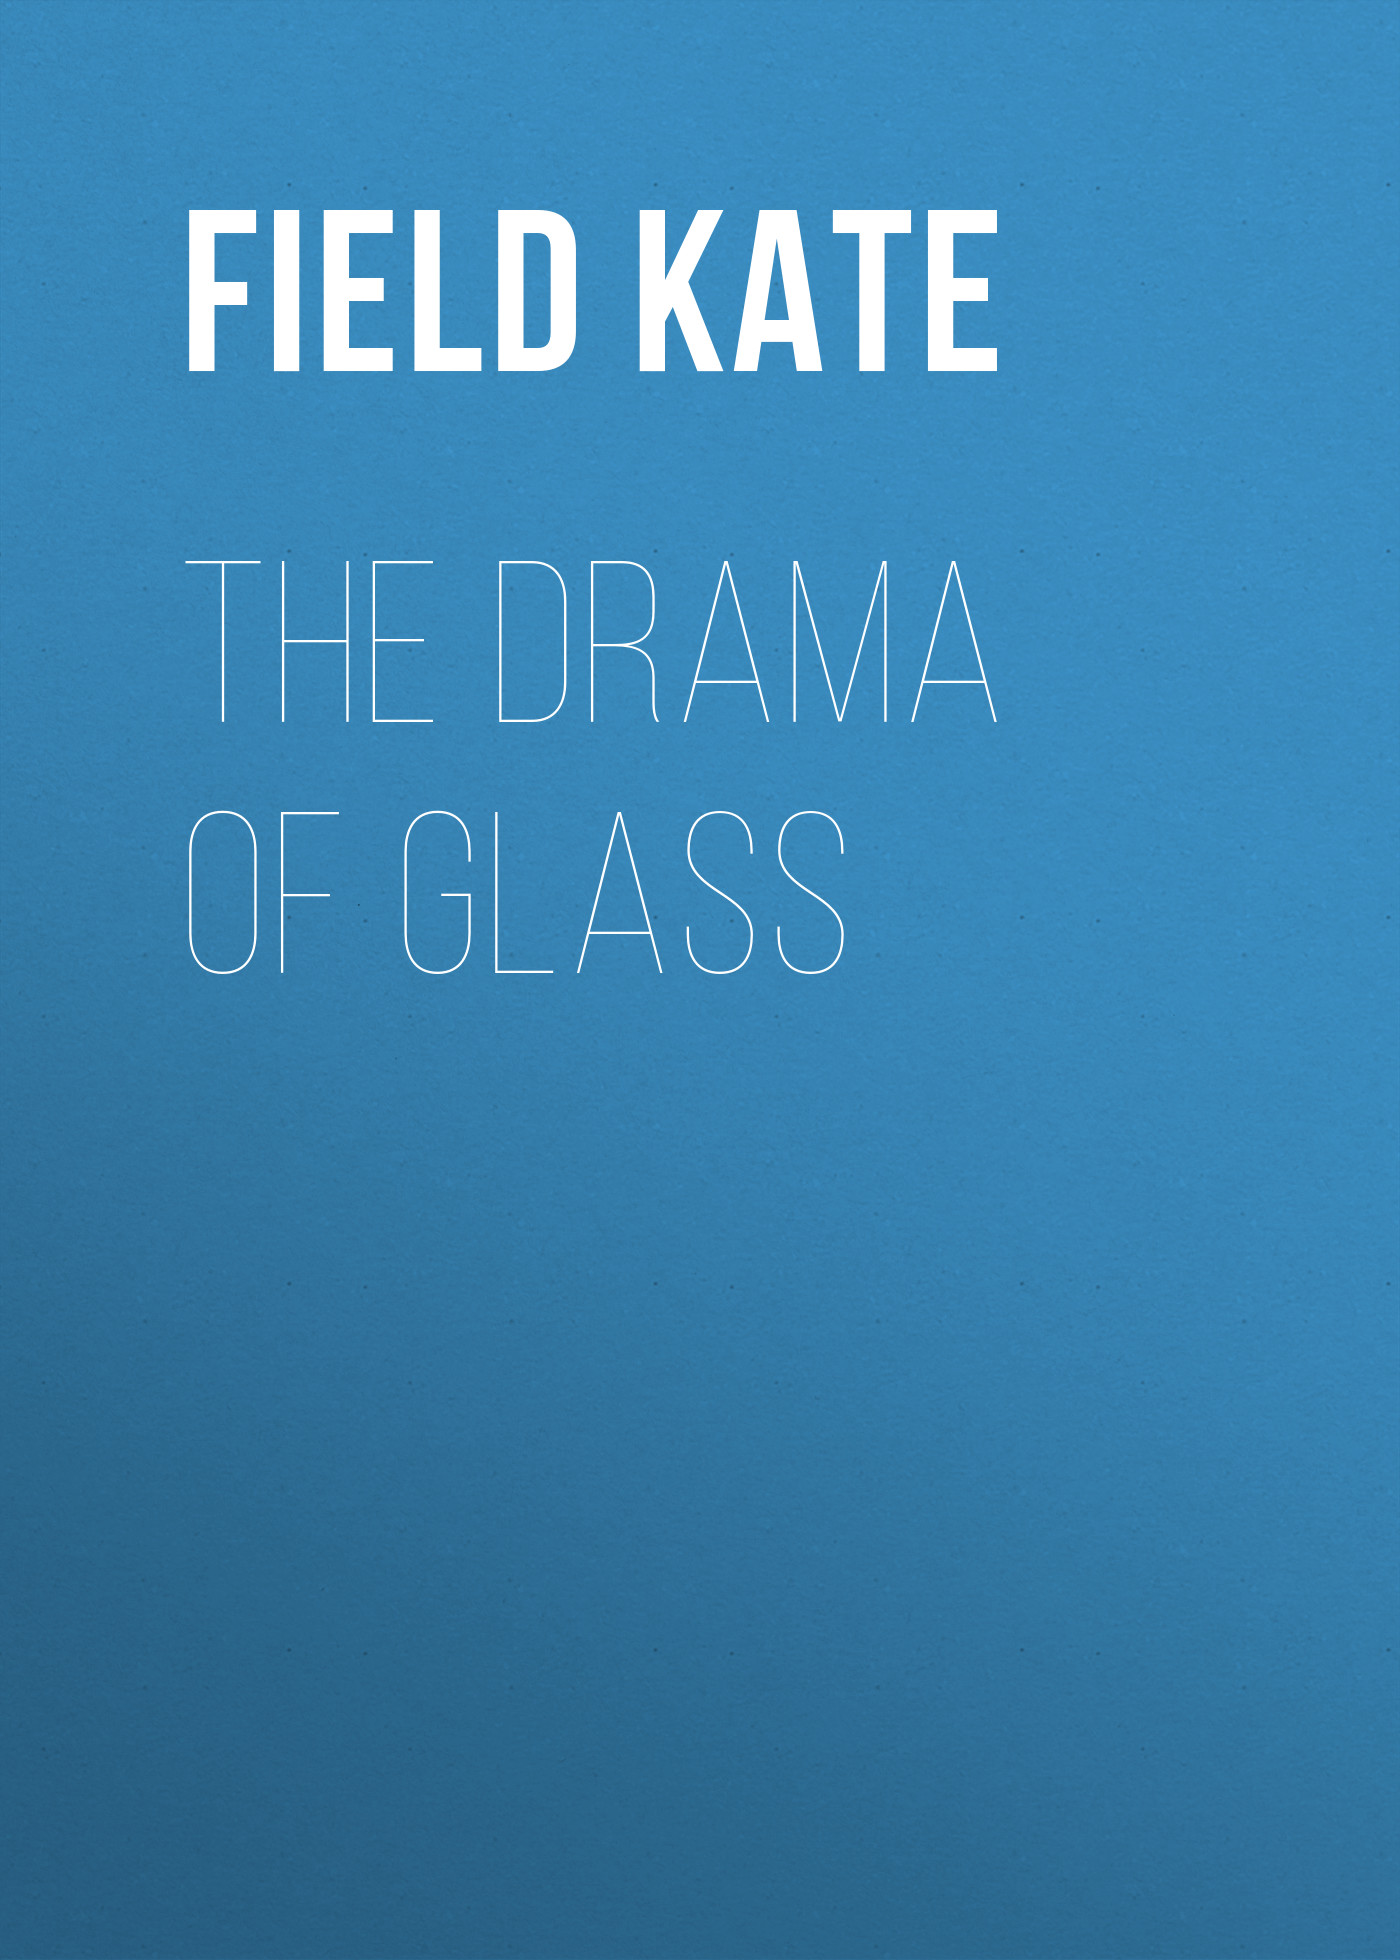 Книга The Drama of Glass из серии , созданная Kate Field, может относится к жанру Техническая литература, Зарубежная старинная литература, Зарубежная классика. Стоимость книги The Drama of Glass  с идентификатором 24727449 составляет 0 руб.